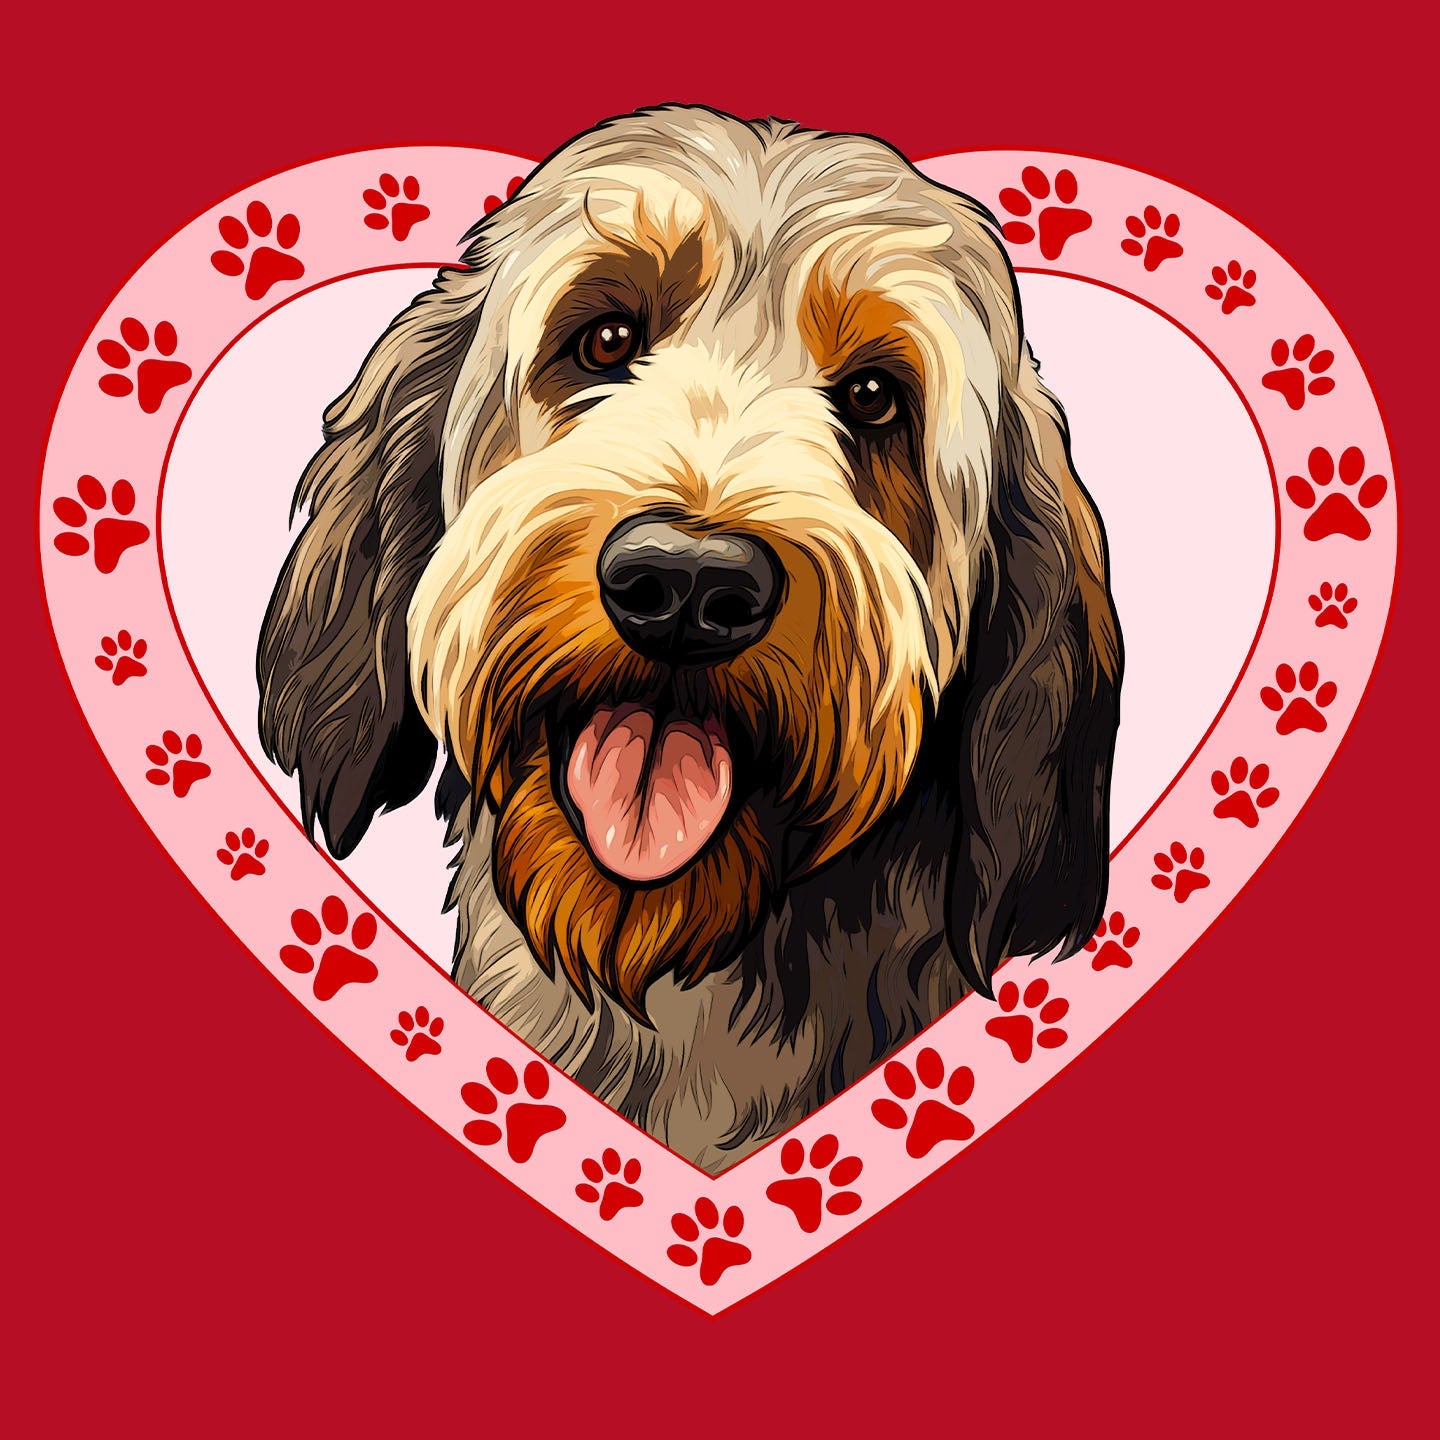 Otterhound Illustration In Heart - Women's V-Neck T-Shirt